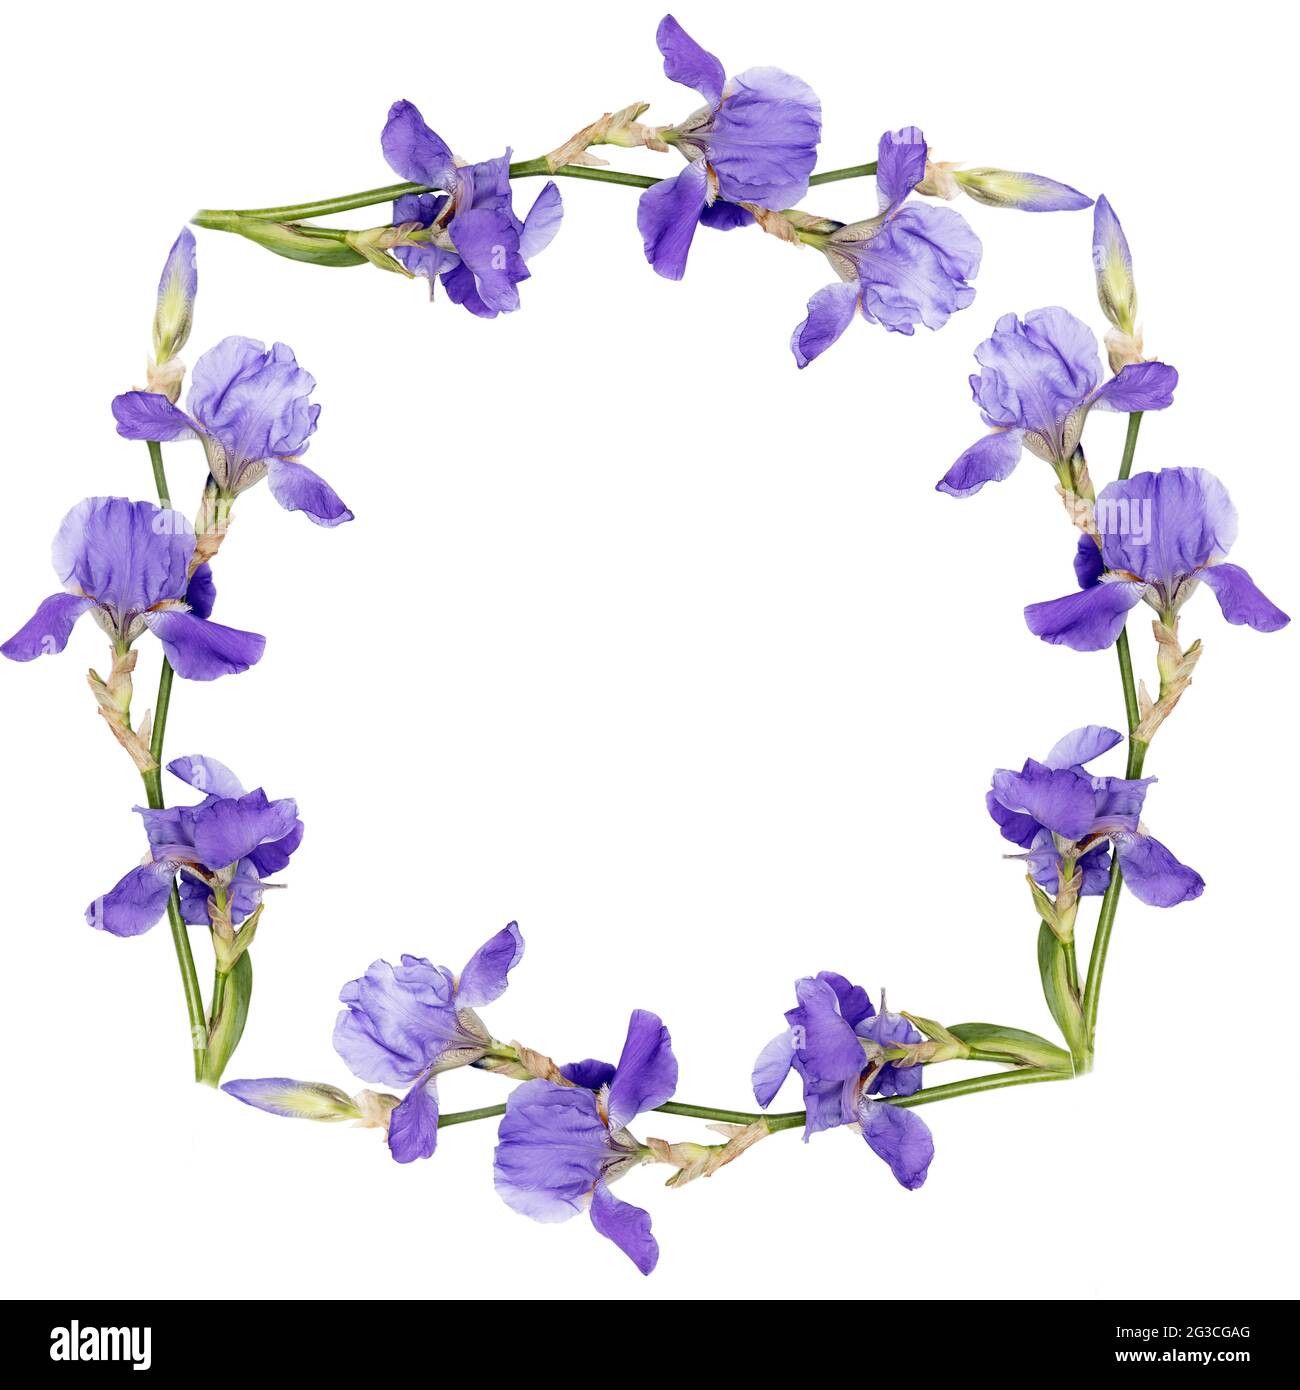 Fond floral comme un cercle. Iris sibérien, isolé sur fond blanc, cadre carré. Copier l'espace. Placer pour le texte Banque D'Images